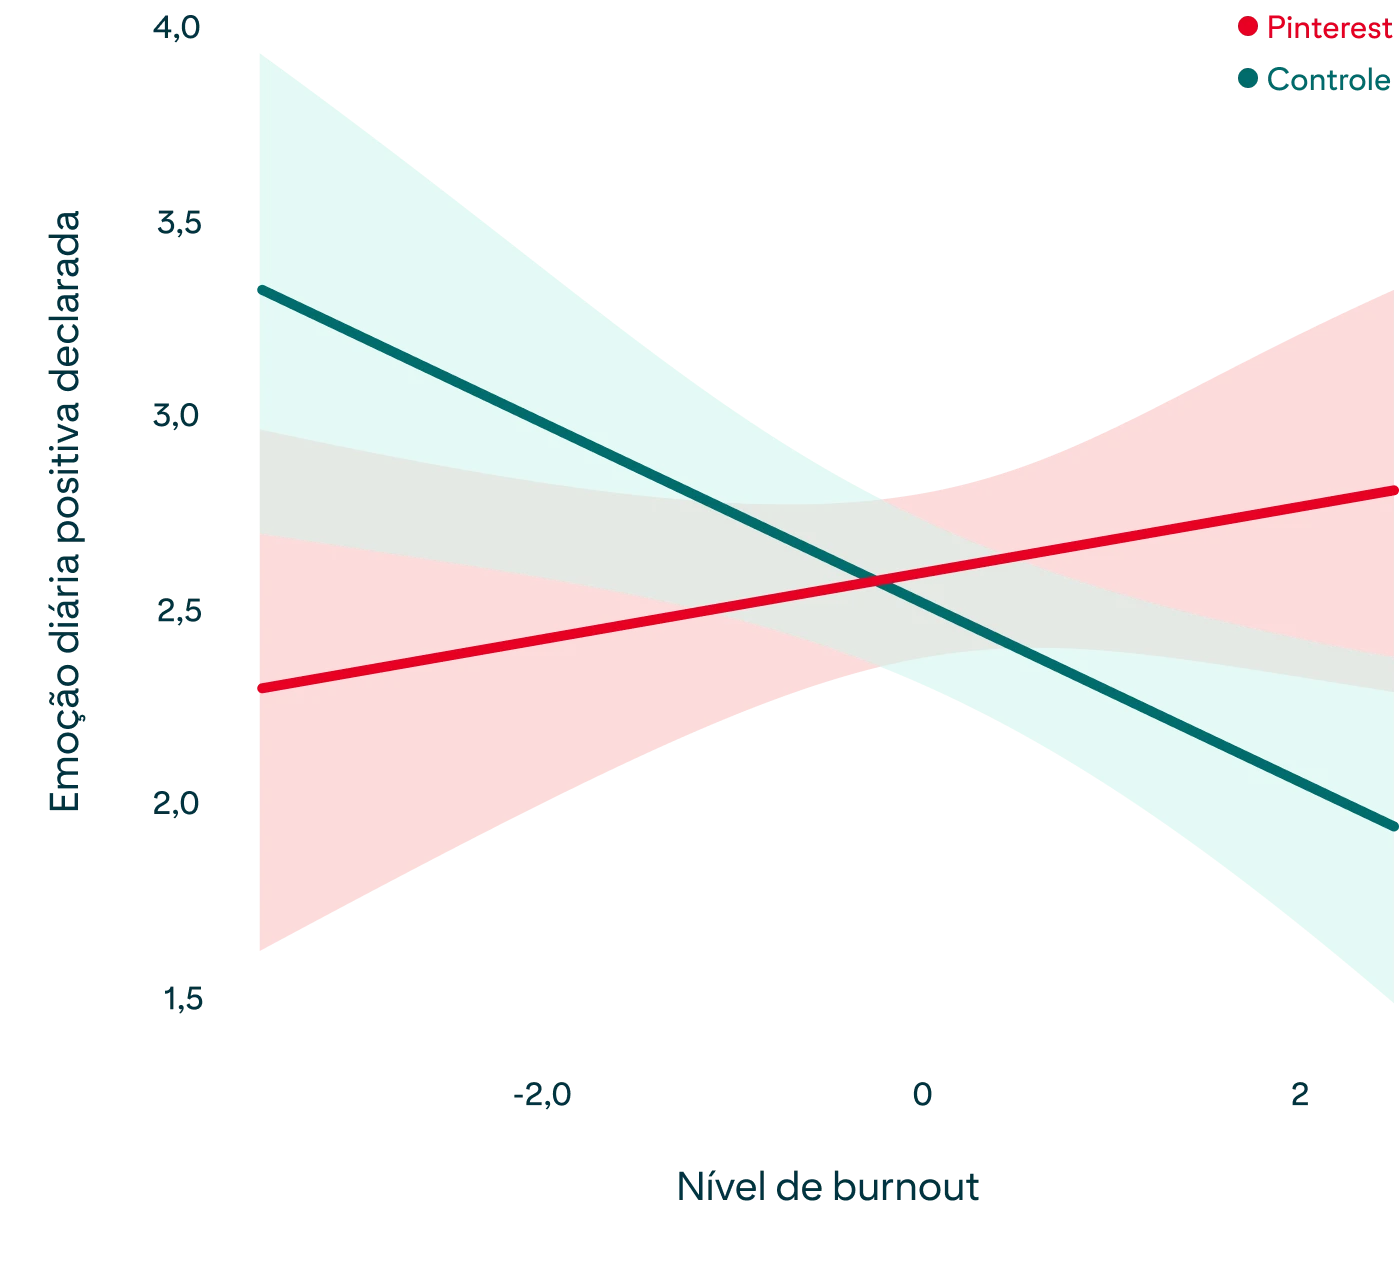  Gráfico mostrando a relação entre níveis de burnout e emoções positivas declaradas, conforme descrito no parágrafo acima 